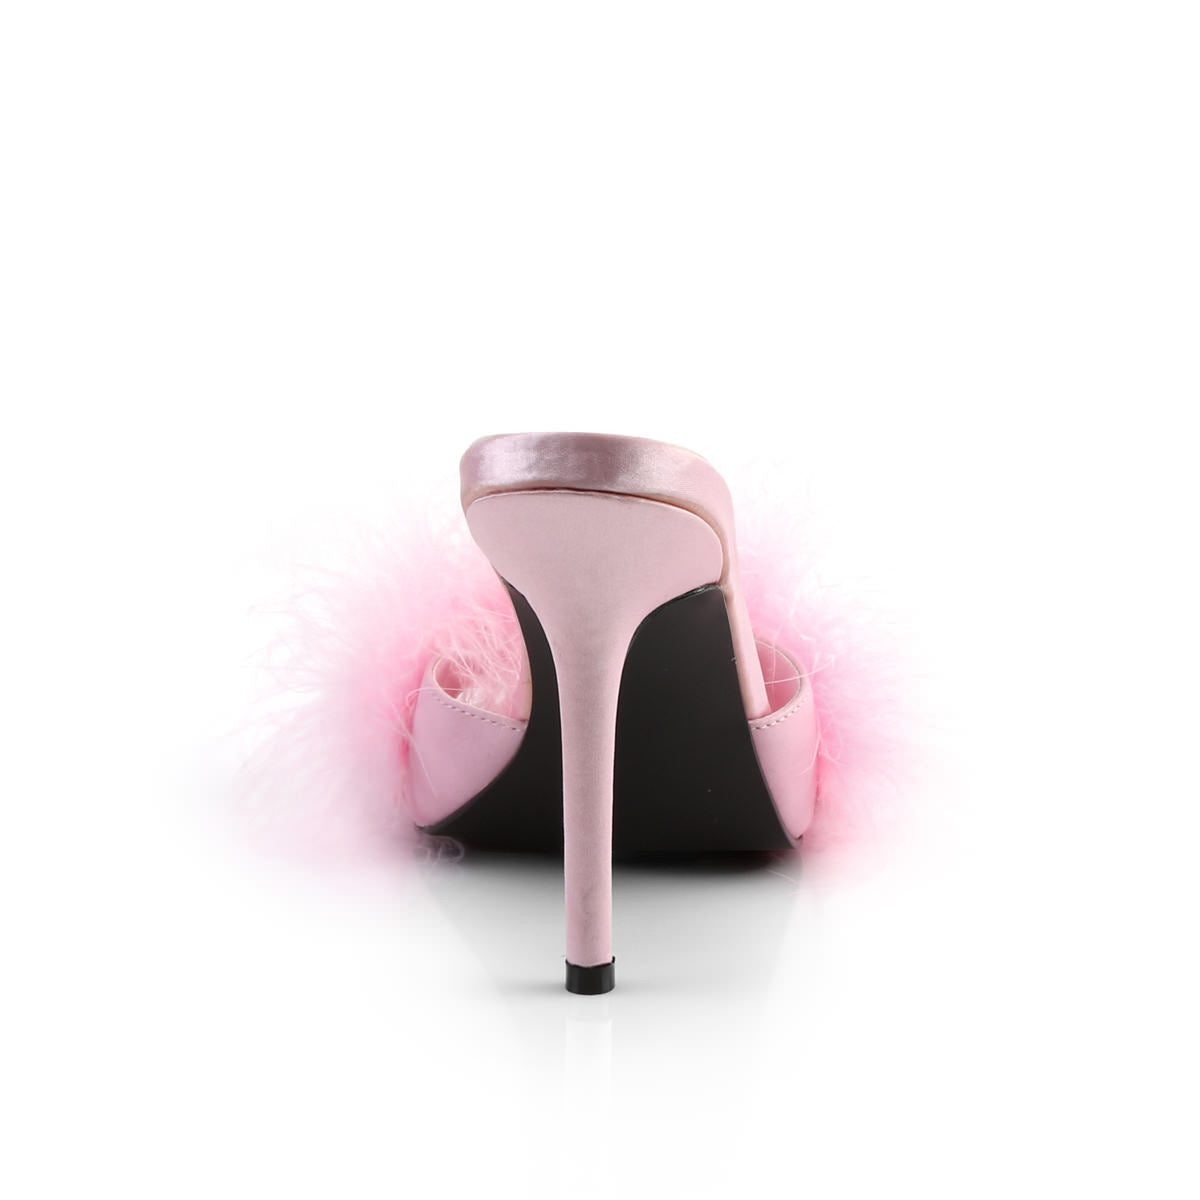 4 Inch Heel CLASSIQUE-01F Baby Pink